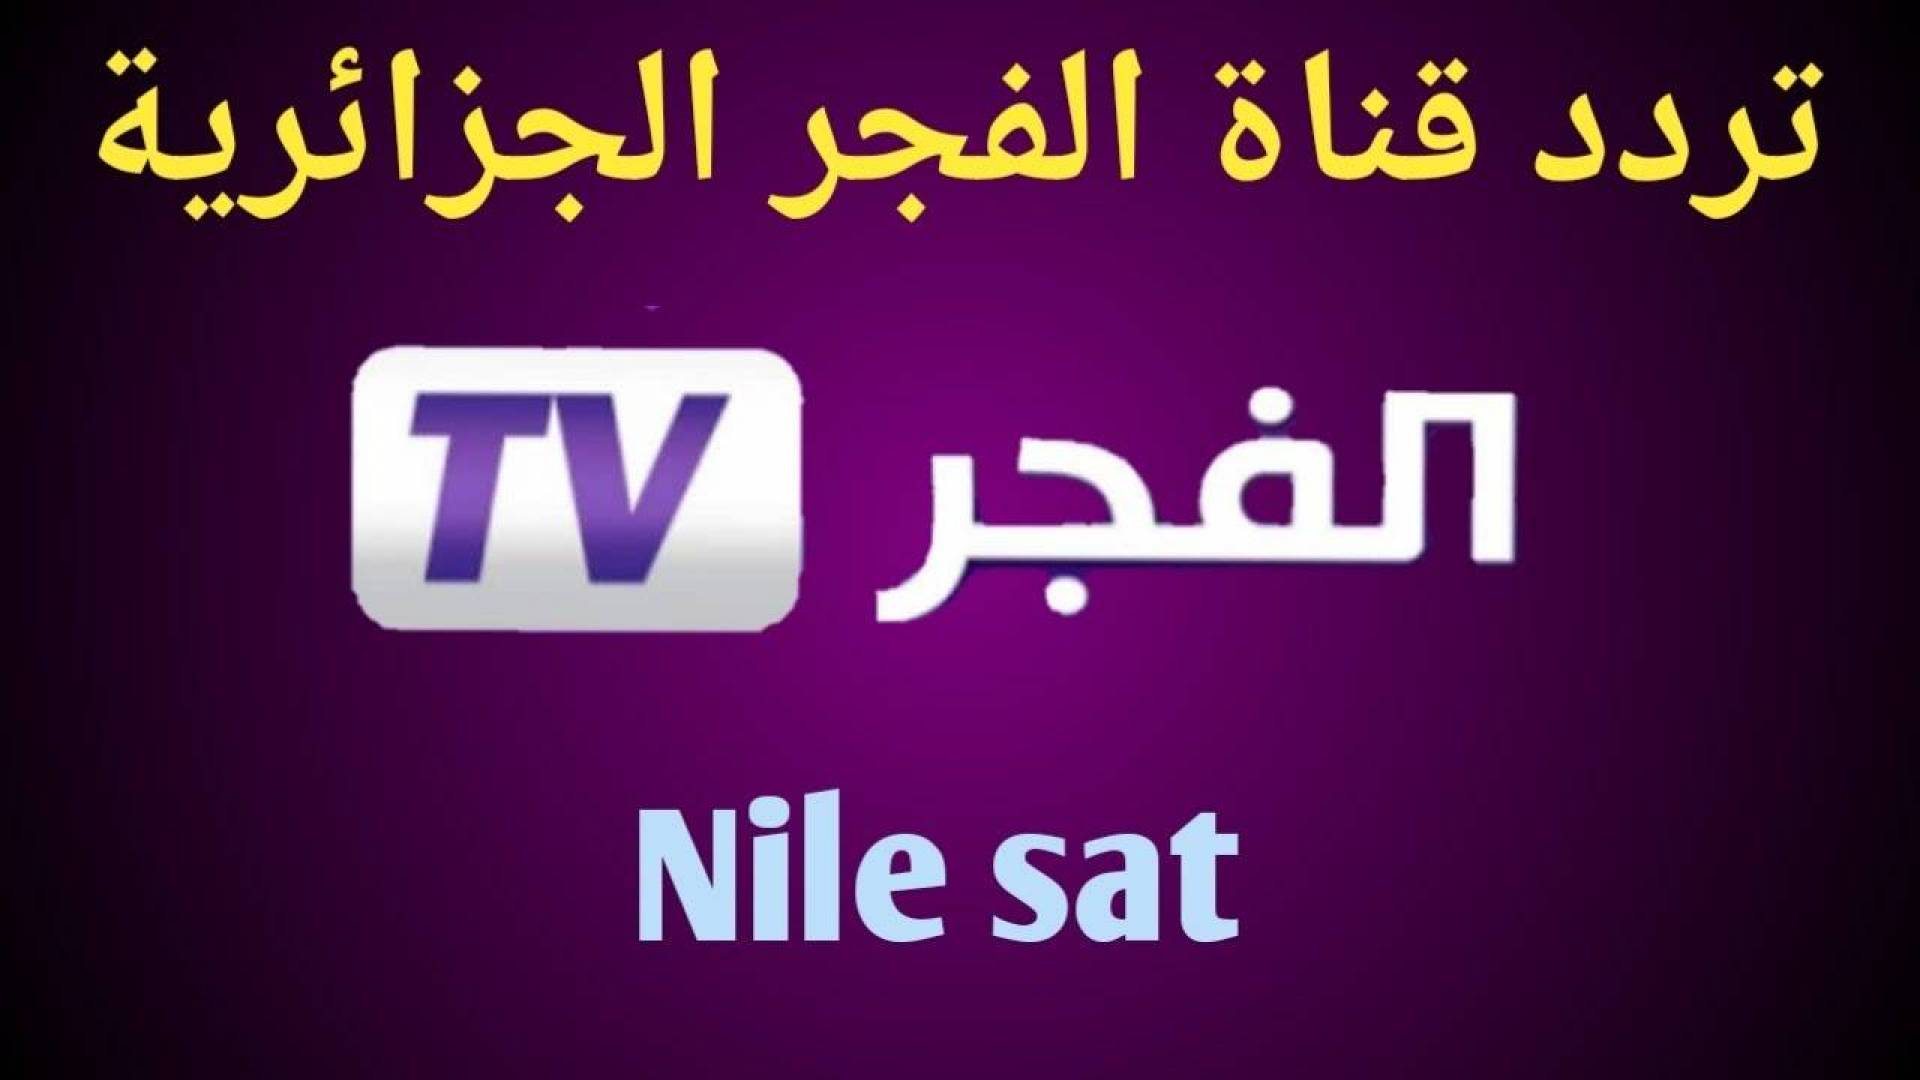 الان أضبط تردد قناة الفجر الجزائرية Al fajr tv  الناقلة لمسلسل قيامة عثمان والمسلسلات التركية مجانا بجودة HD